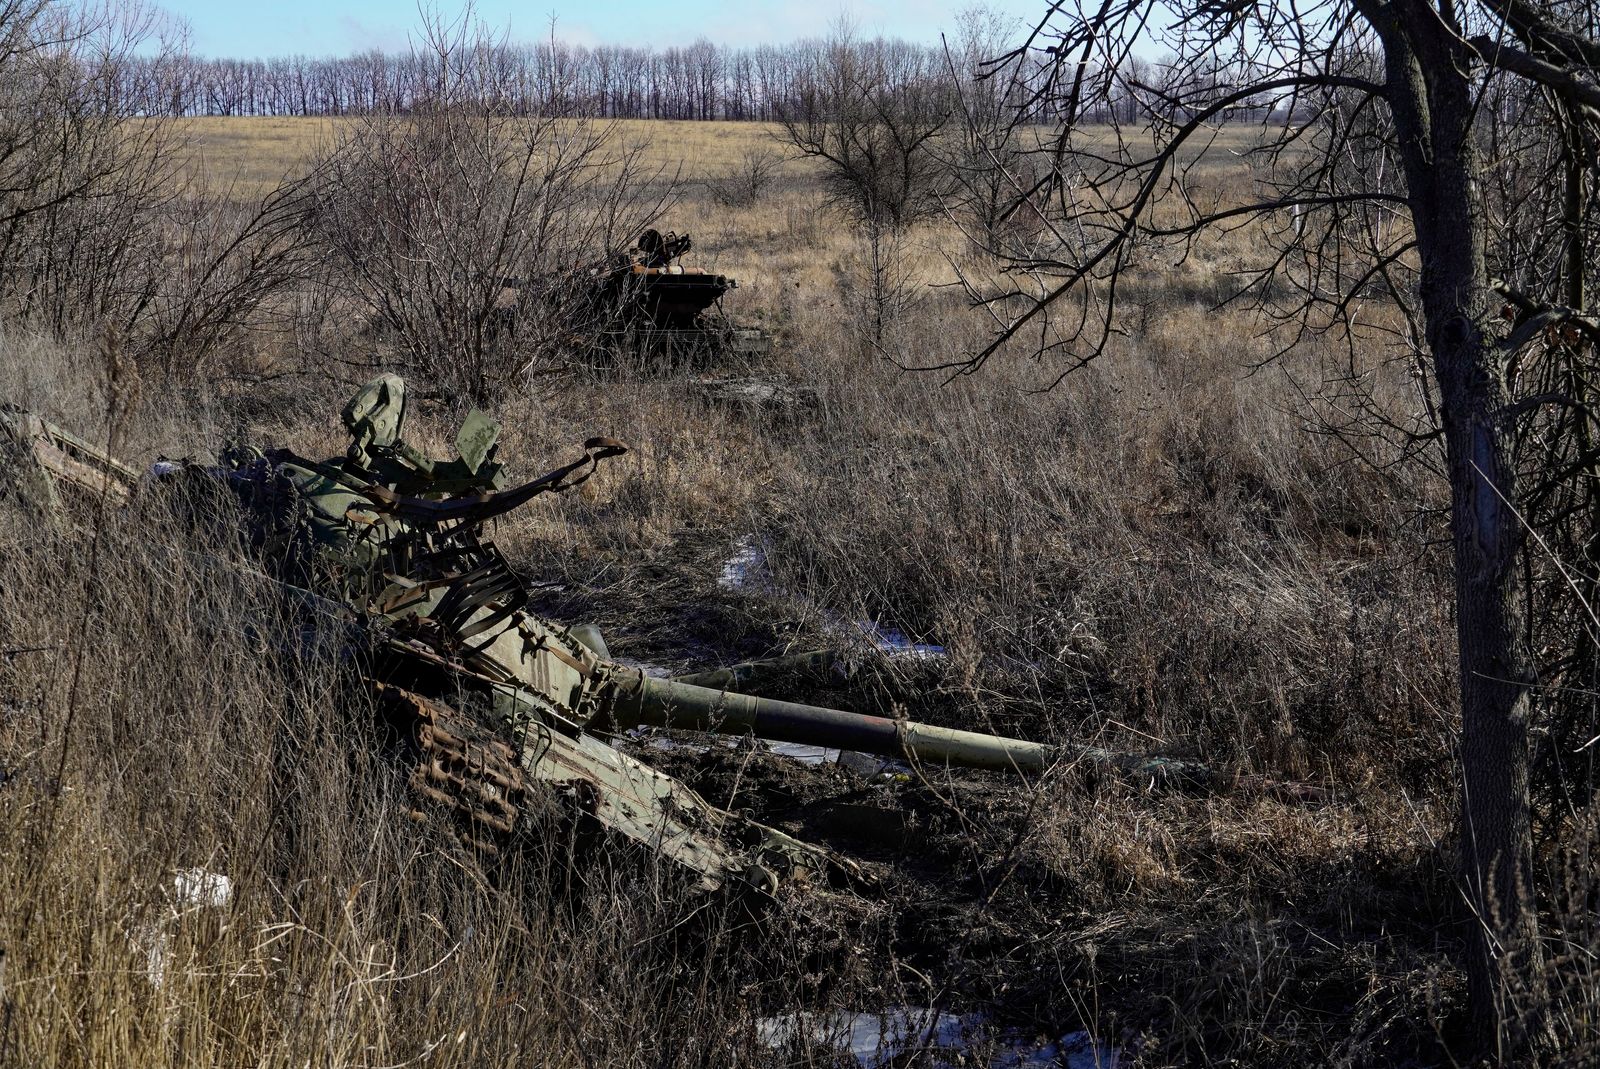 دبابة مدمرة في بلدة سيفيرودونتسك الخاضعة للسيطرة الروسية بشرقي أوكرانيا، 24 يناير 2023 - AFP